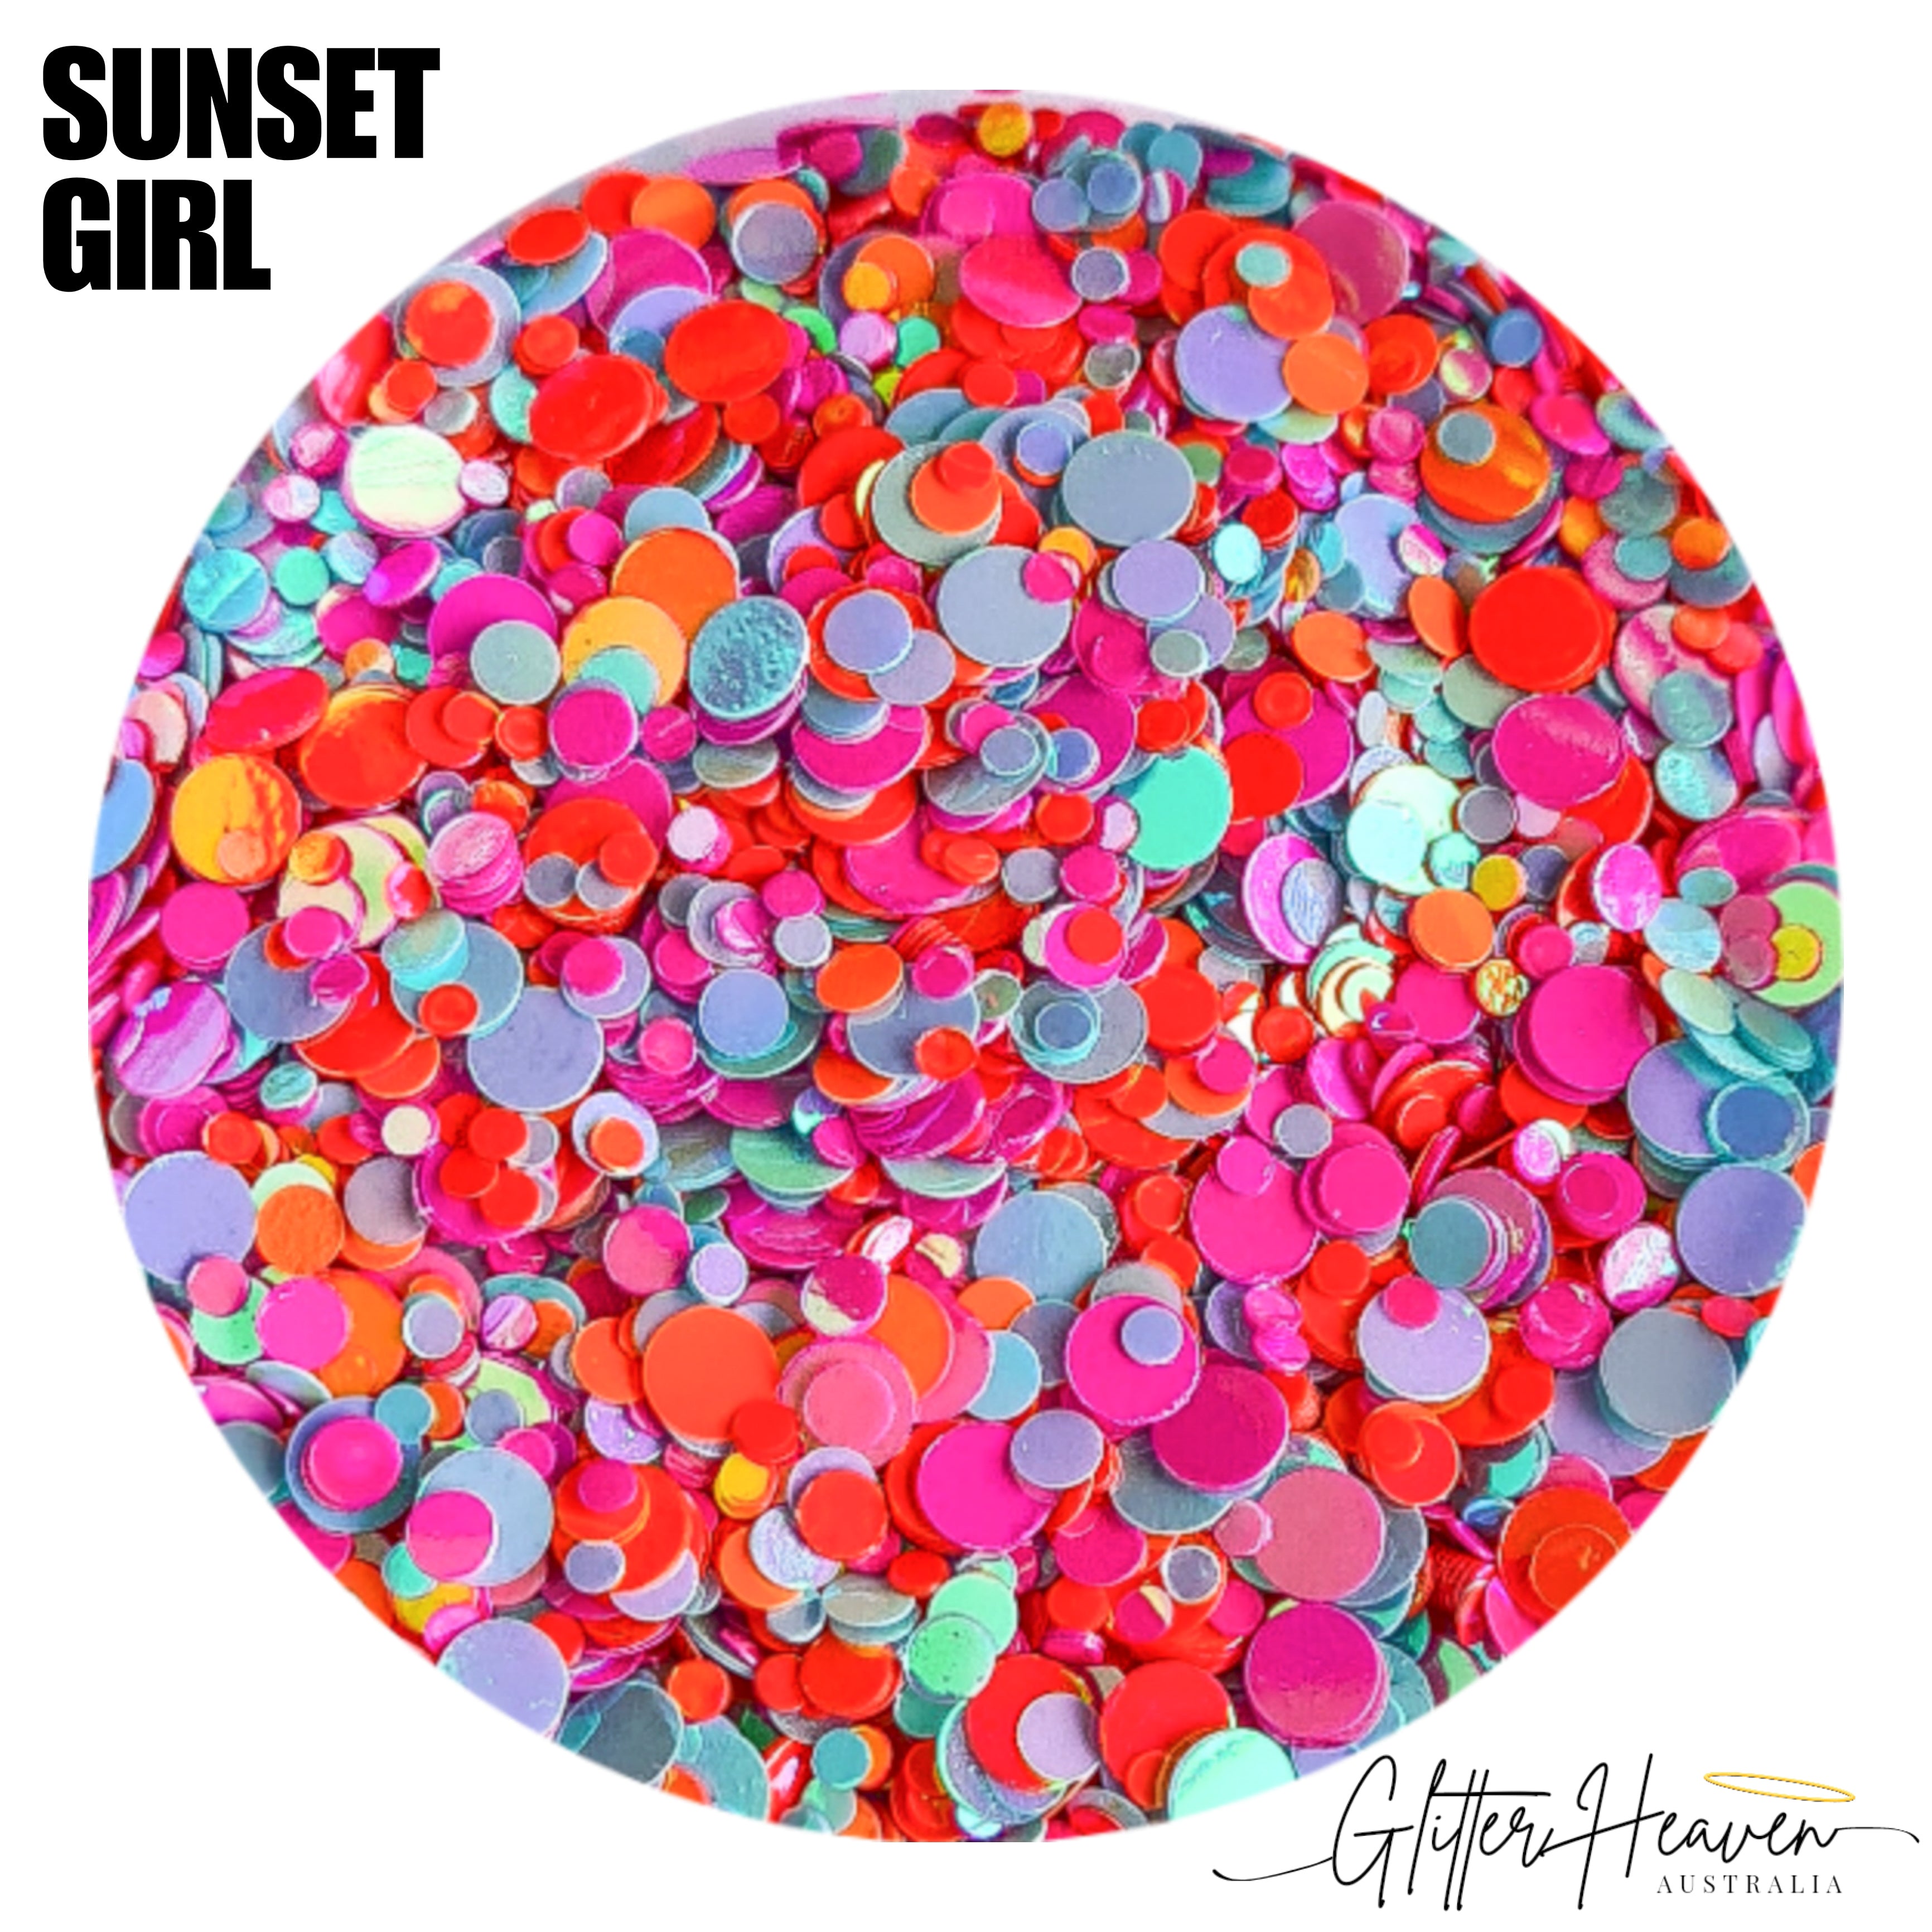 Sunset Girl